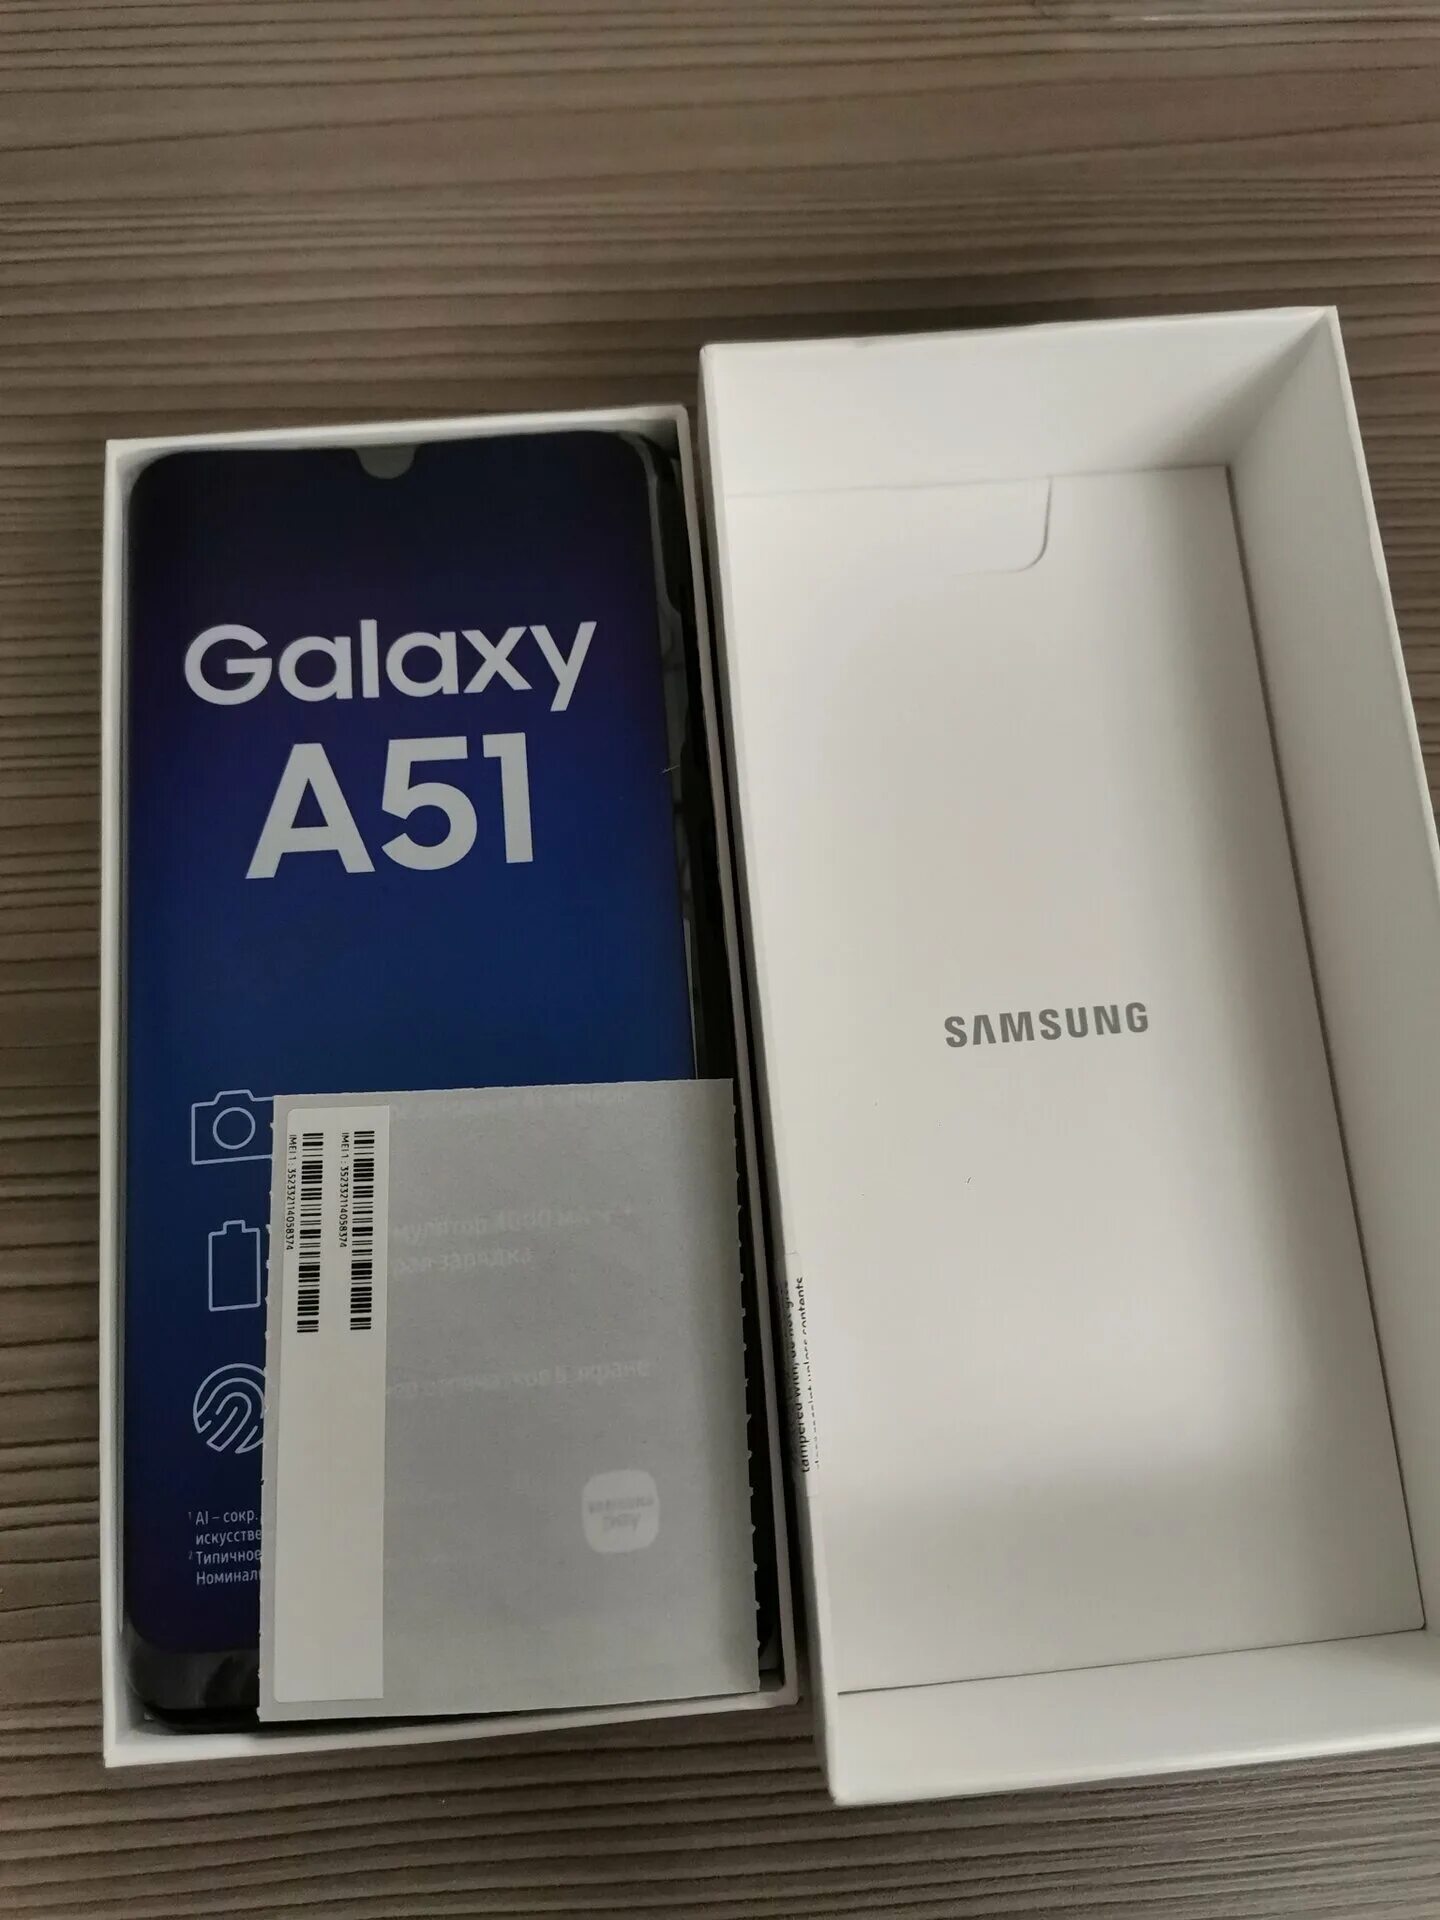 Samsung Galaxy a51 6/128gb. Samsung Galaxy a51 64gb. Samsung Galaxy a51 128gb Black. Samsung Galaxy a51 128gb White. Самсунг а 51 128 гб